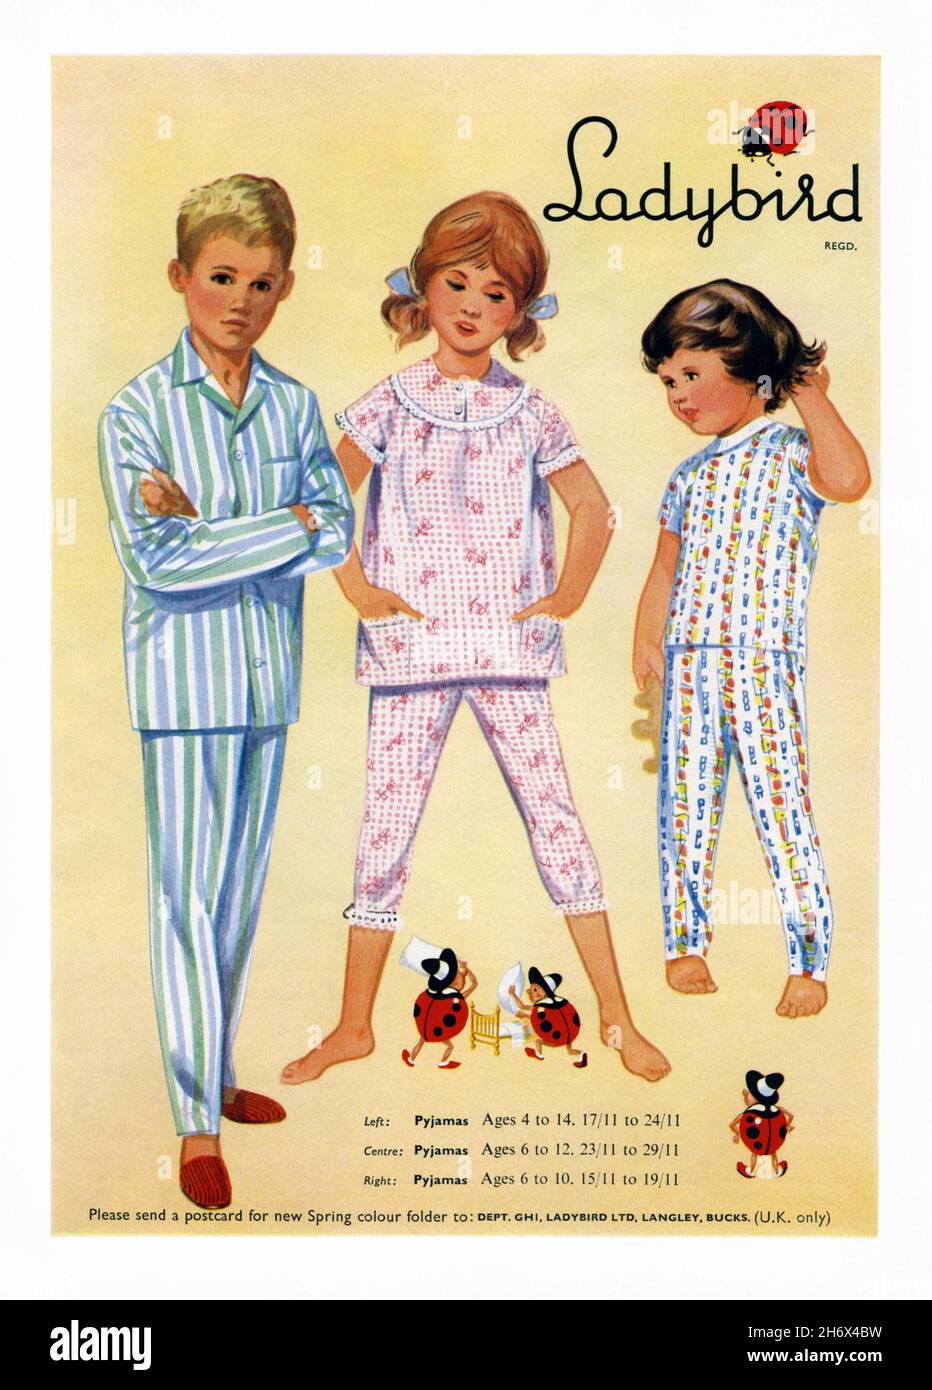 Un anuncio de 1960s para ropa de dormir para niños Ladybird. El anuncio  apareció en una revista publicada en el Reino Unido en marzo de 1965. La  ilustración muestra ropa de noche